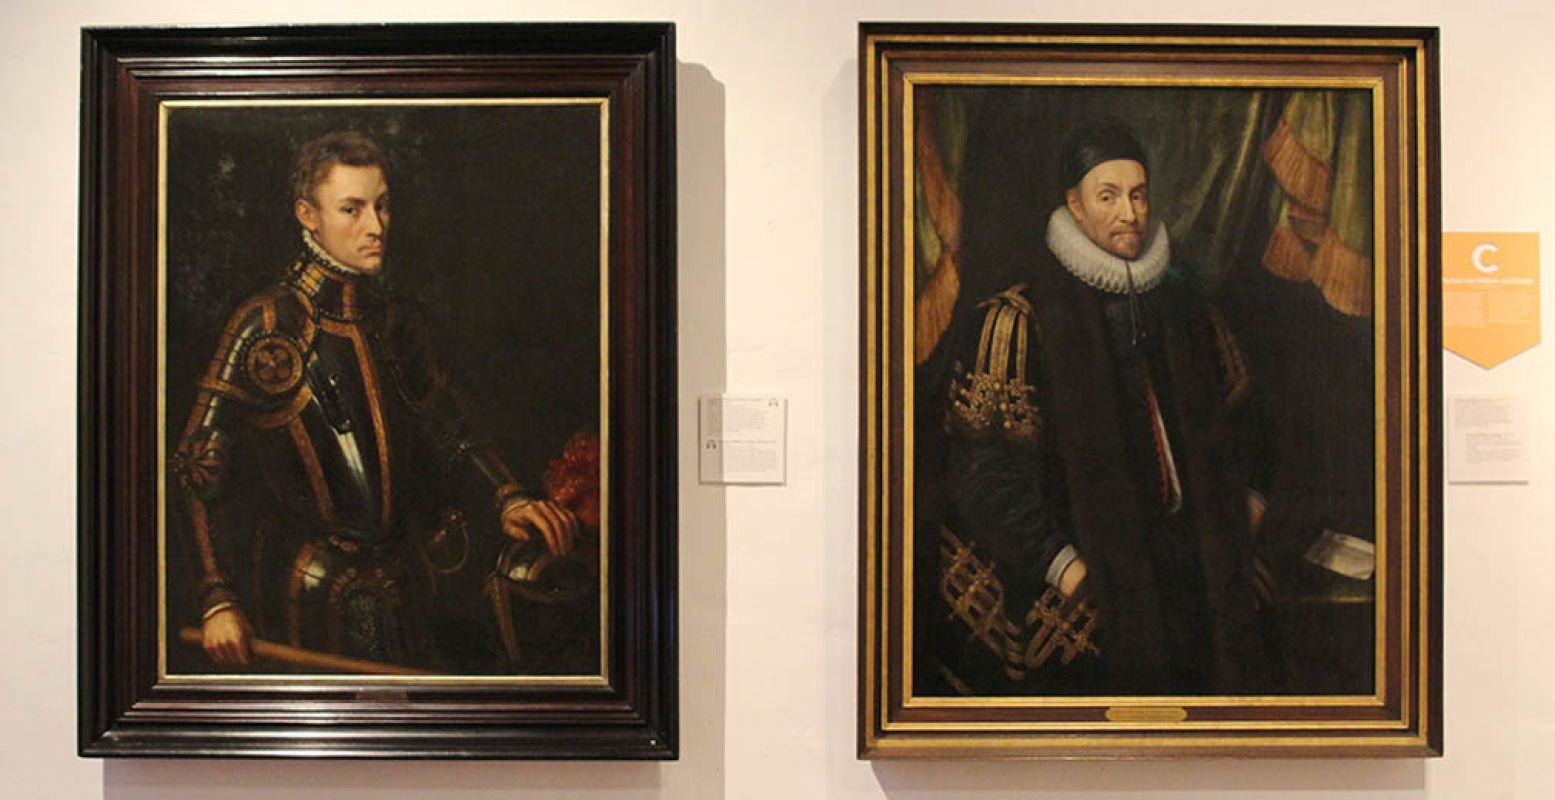 Links een jonge Willem van Oranje geschilderd door Anthonis Mor van Dashorst. Rechts de Willem van Oranje zoals velen hem kennen uit geschiedenisboeken, geschilderd door Michiel Jansz. van Mierevelt (atelier van), ca. 1632. Foto: DagjeWeg.NL.